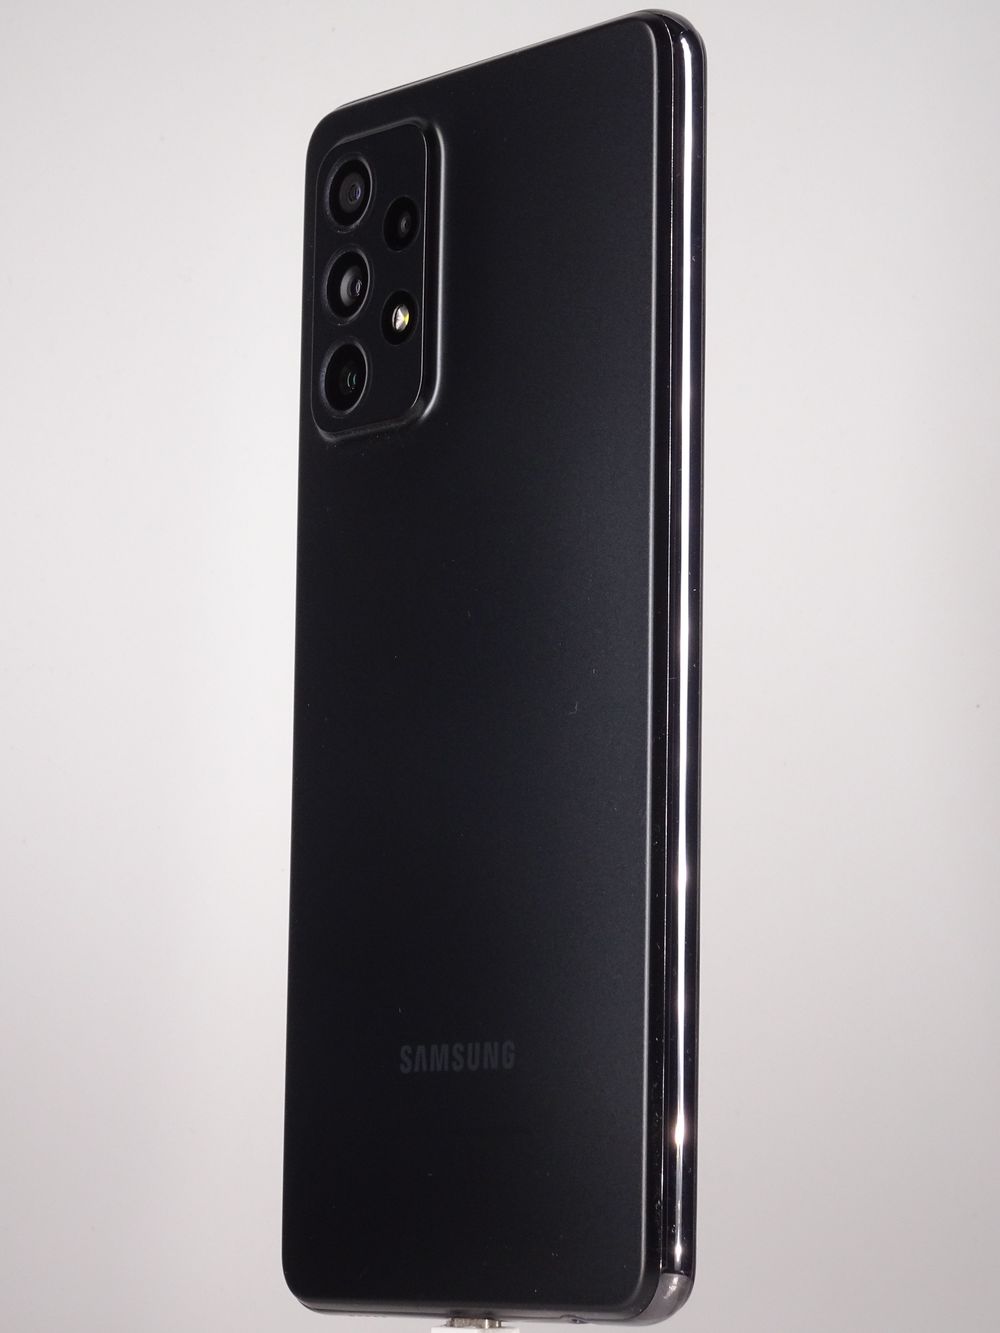 Мобилен телефон Samsung, Galaxy A72 5G, 128 GB, Black,  Като нов